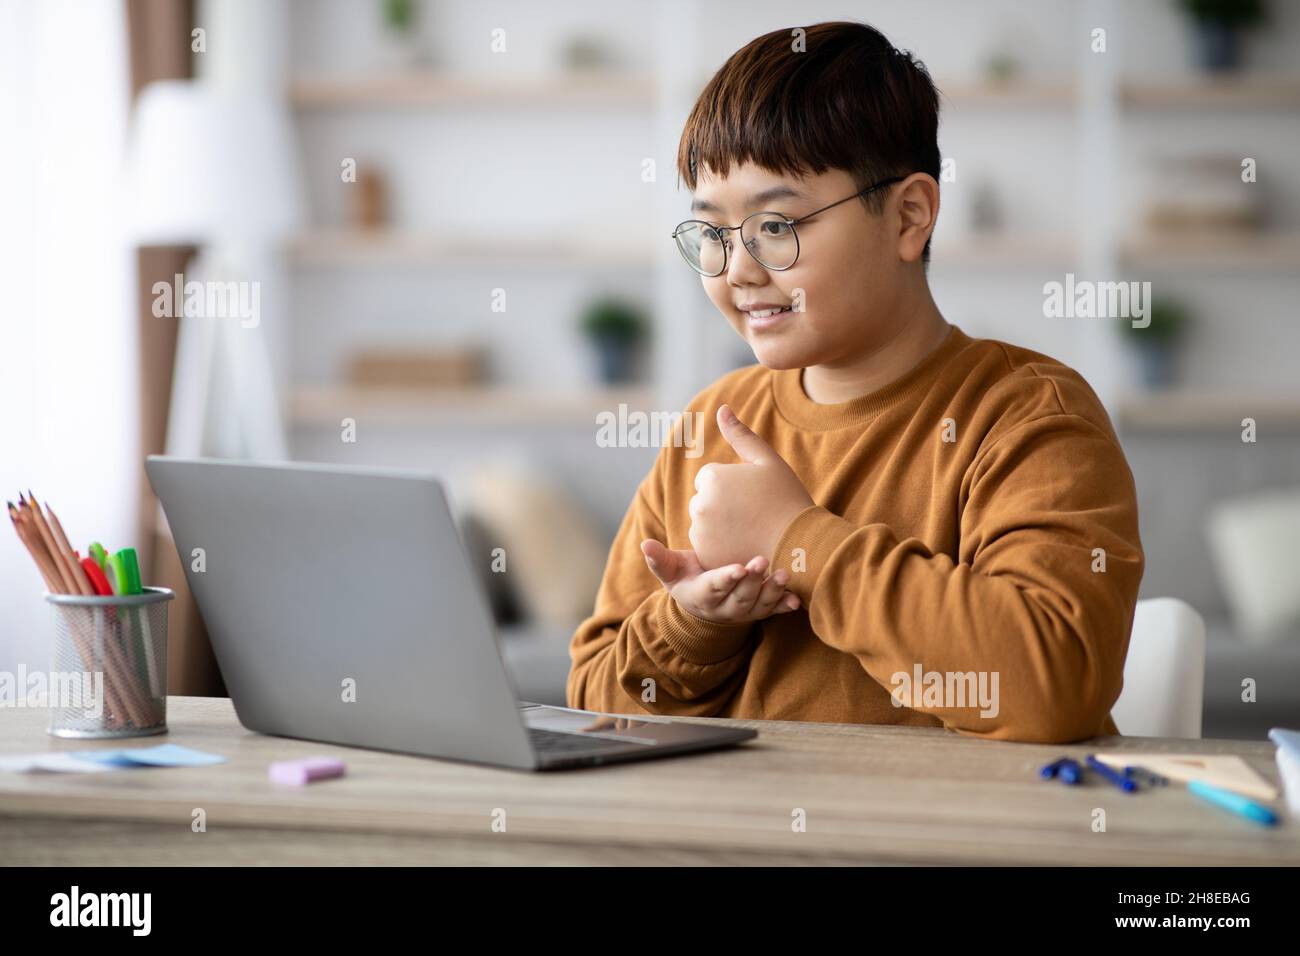 Ragazzo allegro seduto davanti al laptop, mostrando il pollice in su Foto Stock